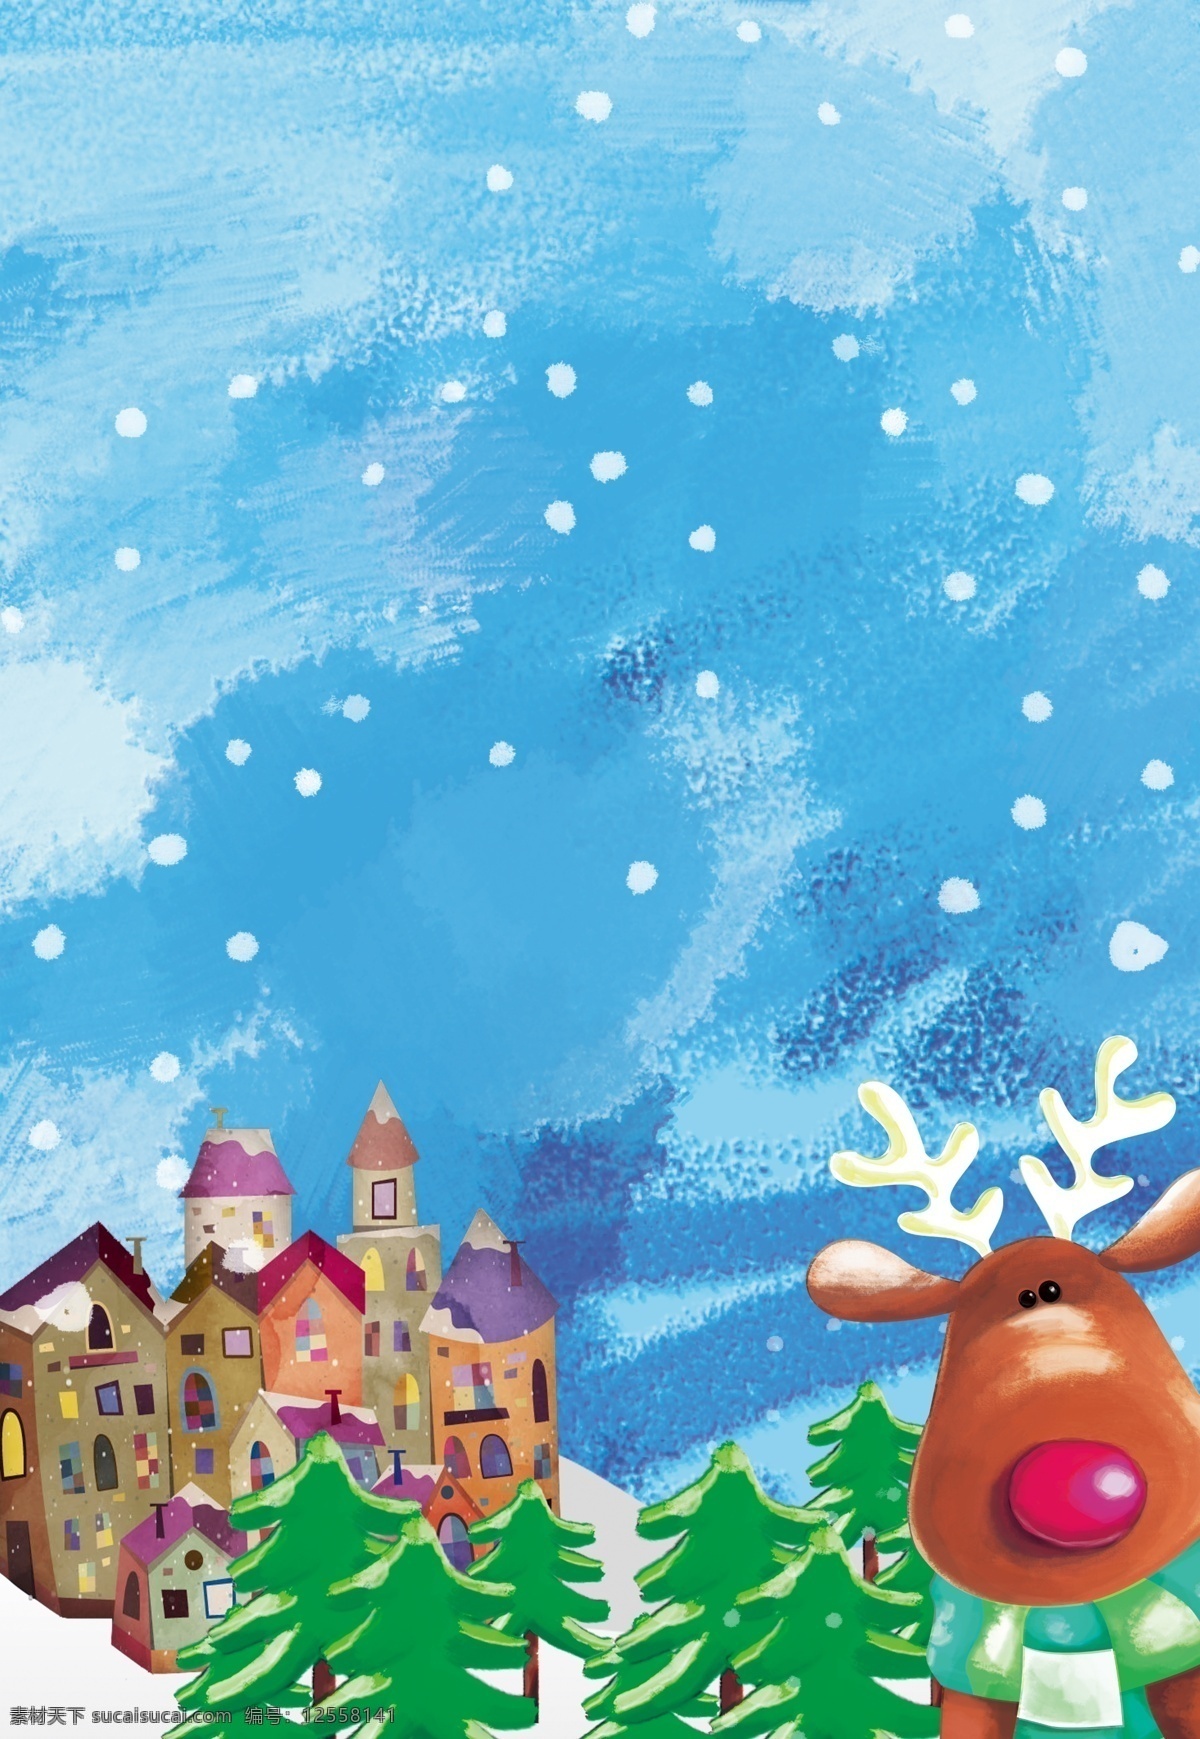 彩绘 圣诞节 城堡 背景 圣诞背景 星空 蓝色背景 彩绘背景 水彩背景 麋鹿 彩色圣诞背景 圣诞背景图 圣诞背景设计